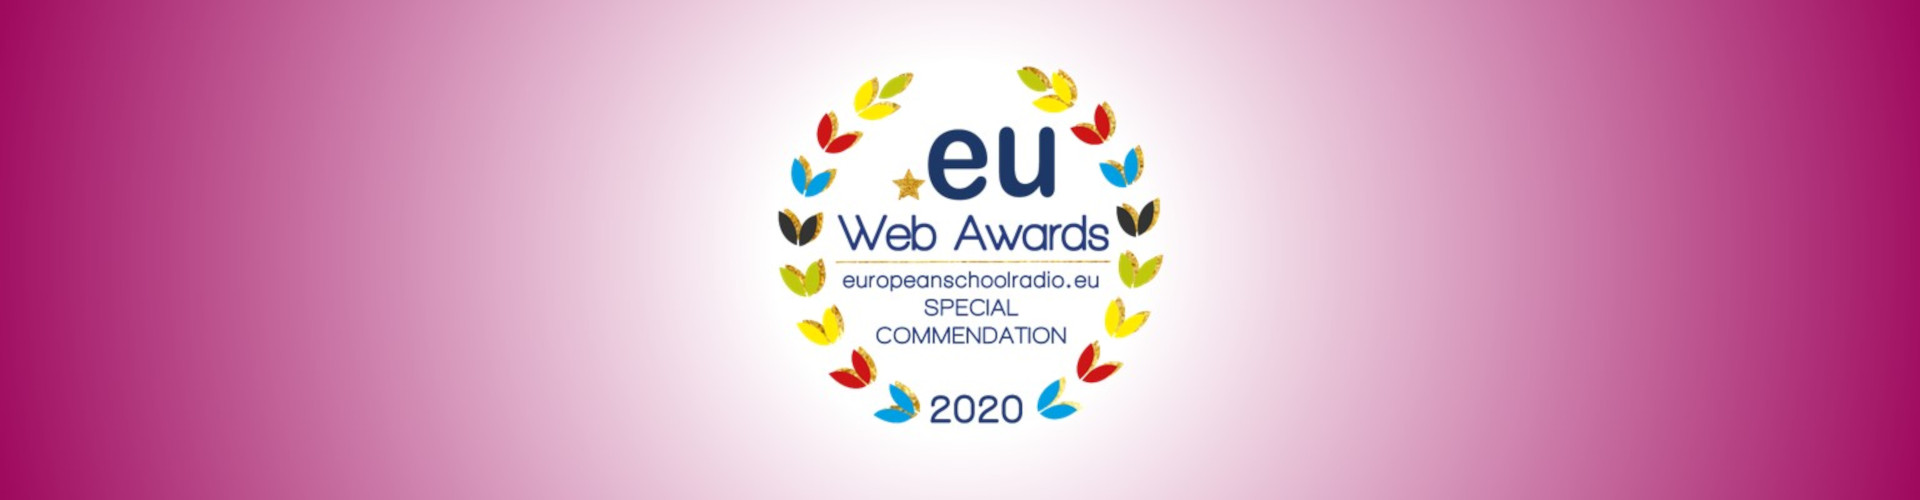 Eu Web Awards